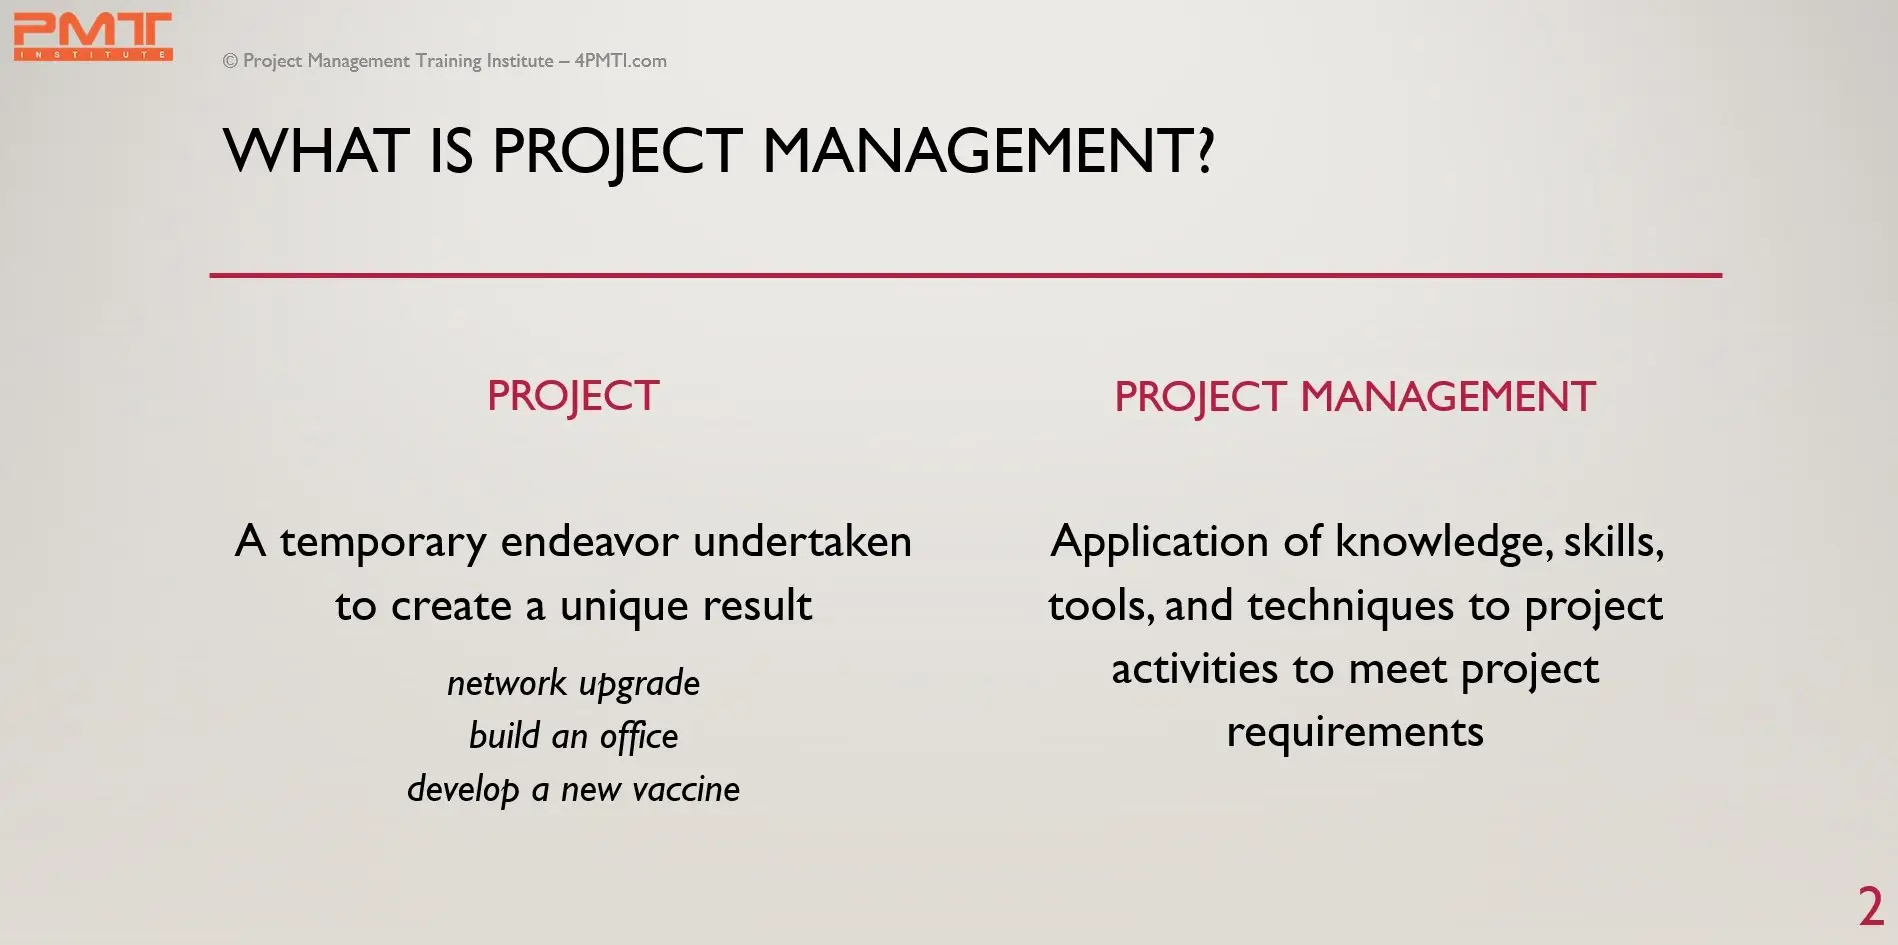 Project Management Definition